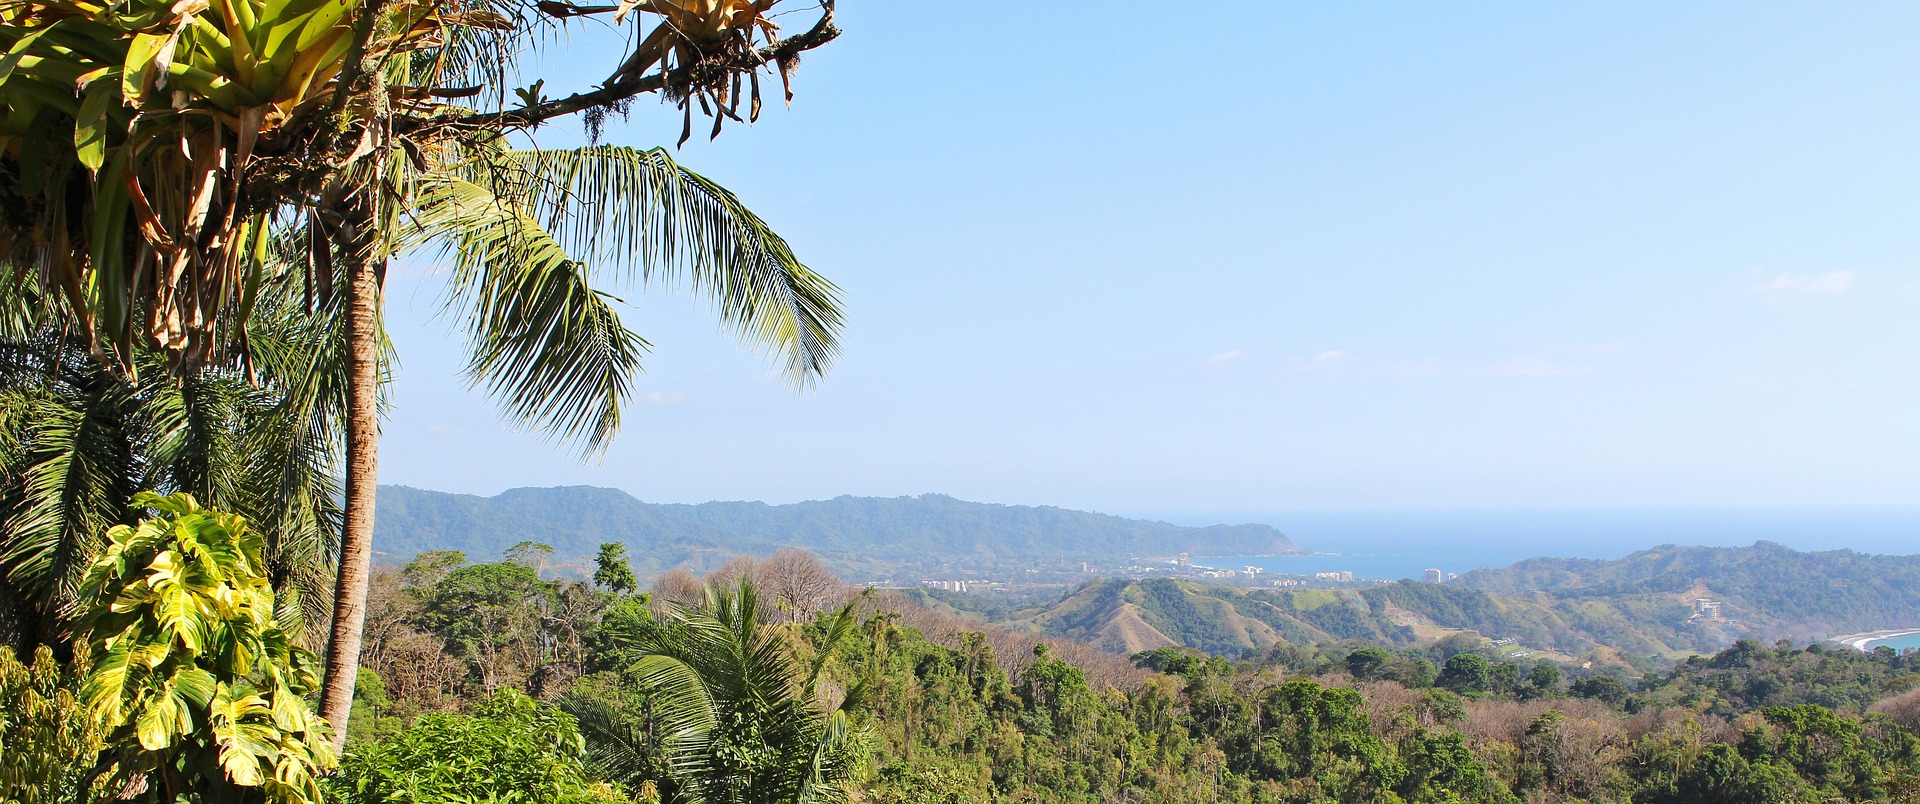 Costa Rica - Sehenswürdigkeiten, Strände & die wichtigsten Informationen